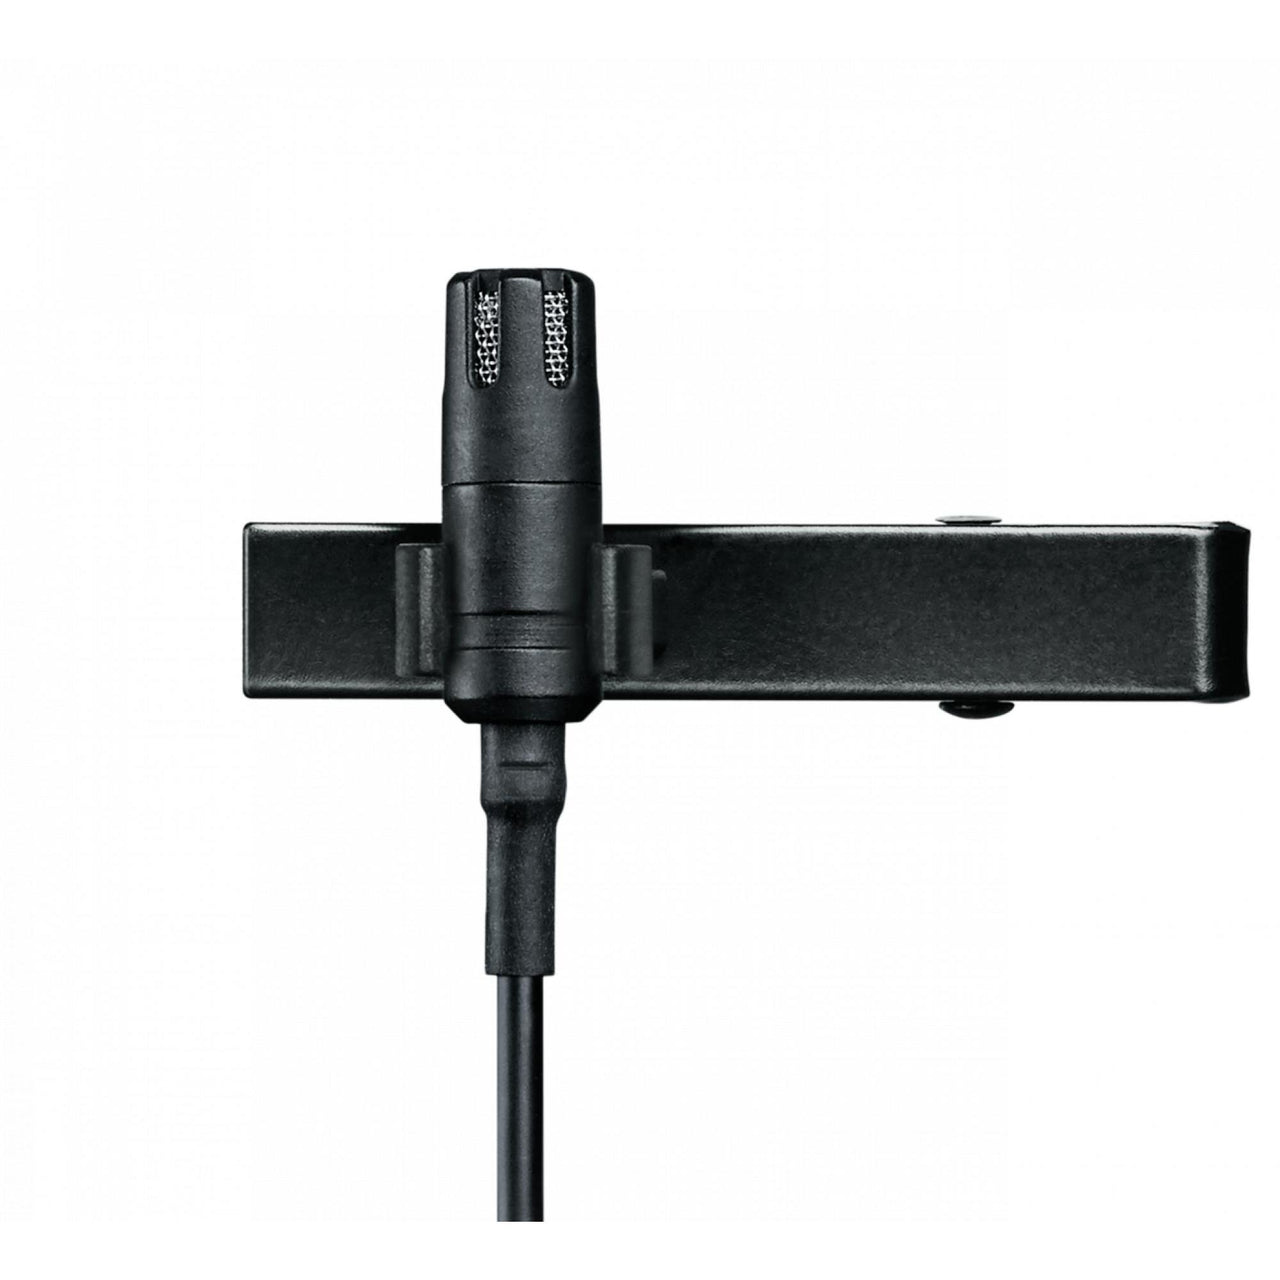 Microfono Shure De Condensador Omnidireccional De Solapa, Mvl-3.5mm